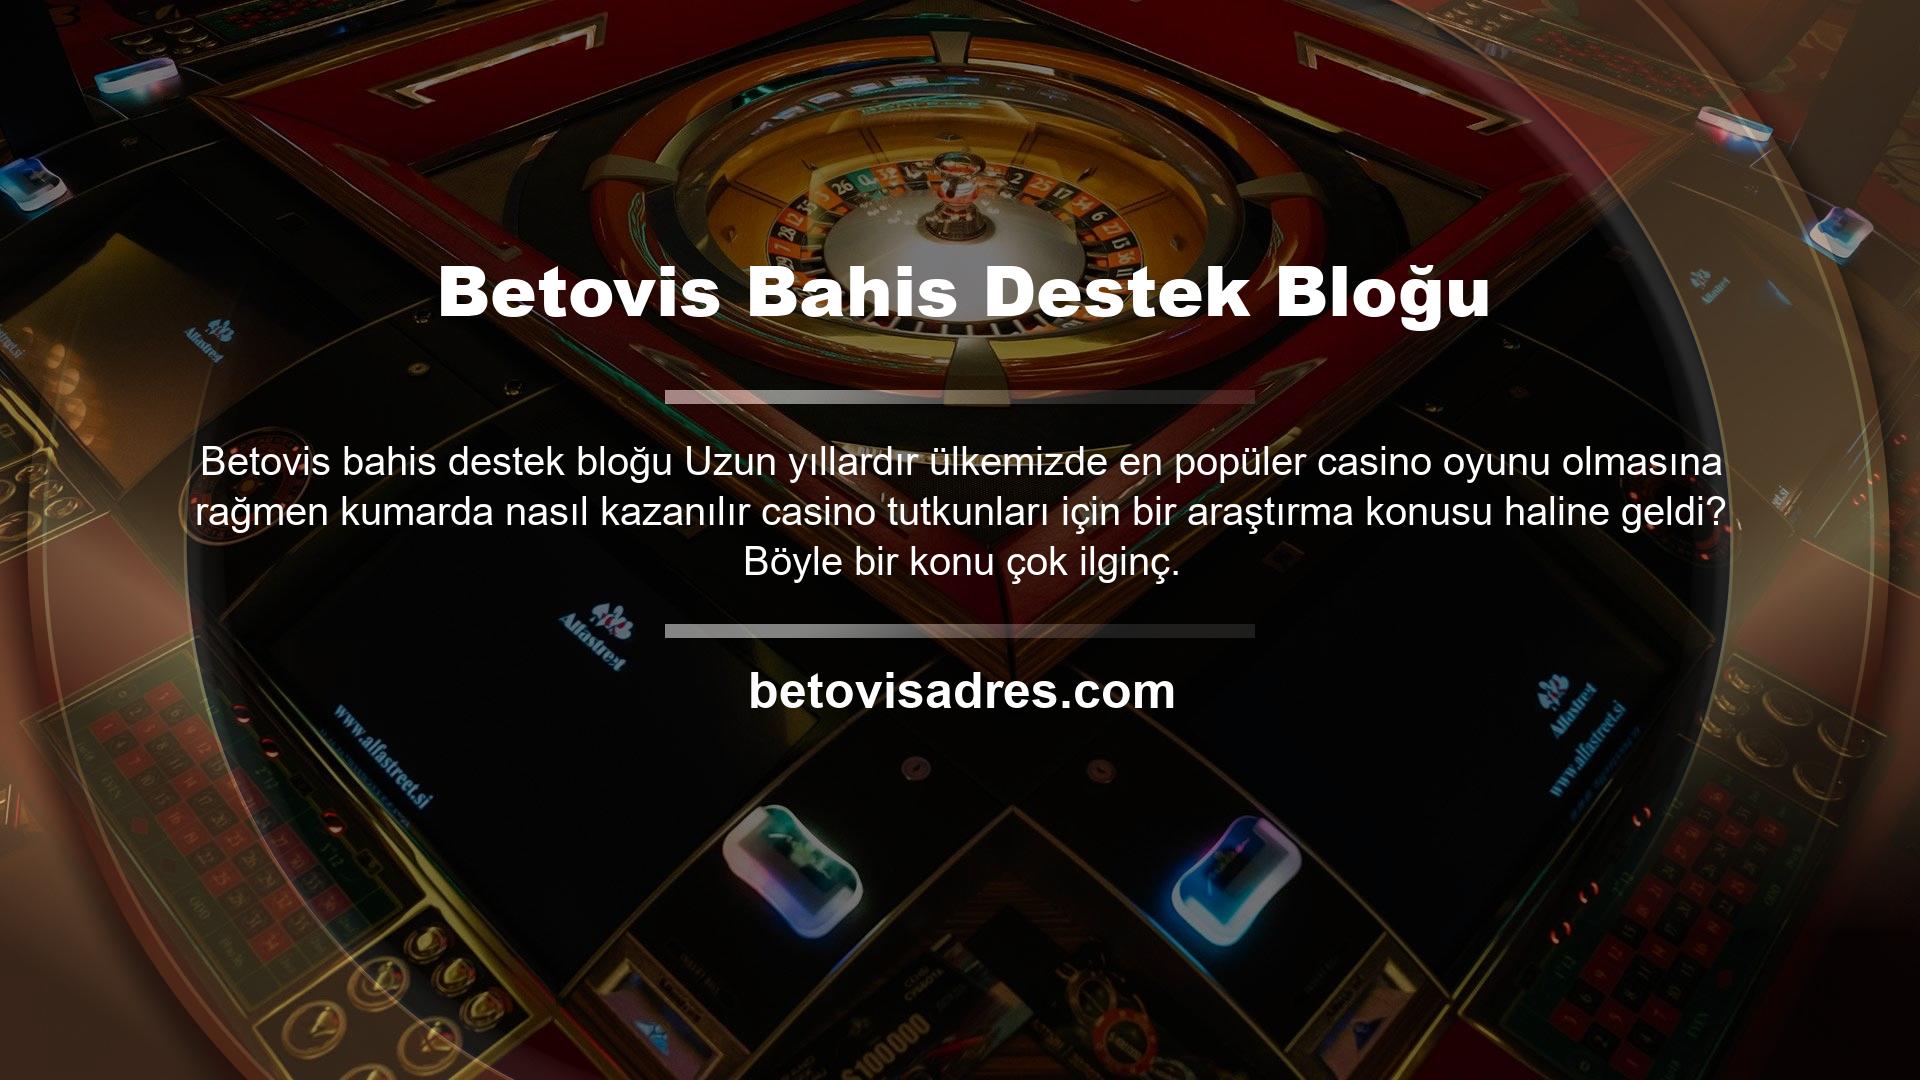 Casino oyunları, ülkemizde uzun yıllardır en popüler casino türlerinden biri olmuştur